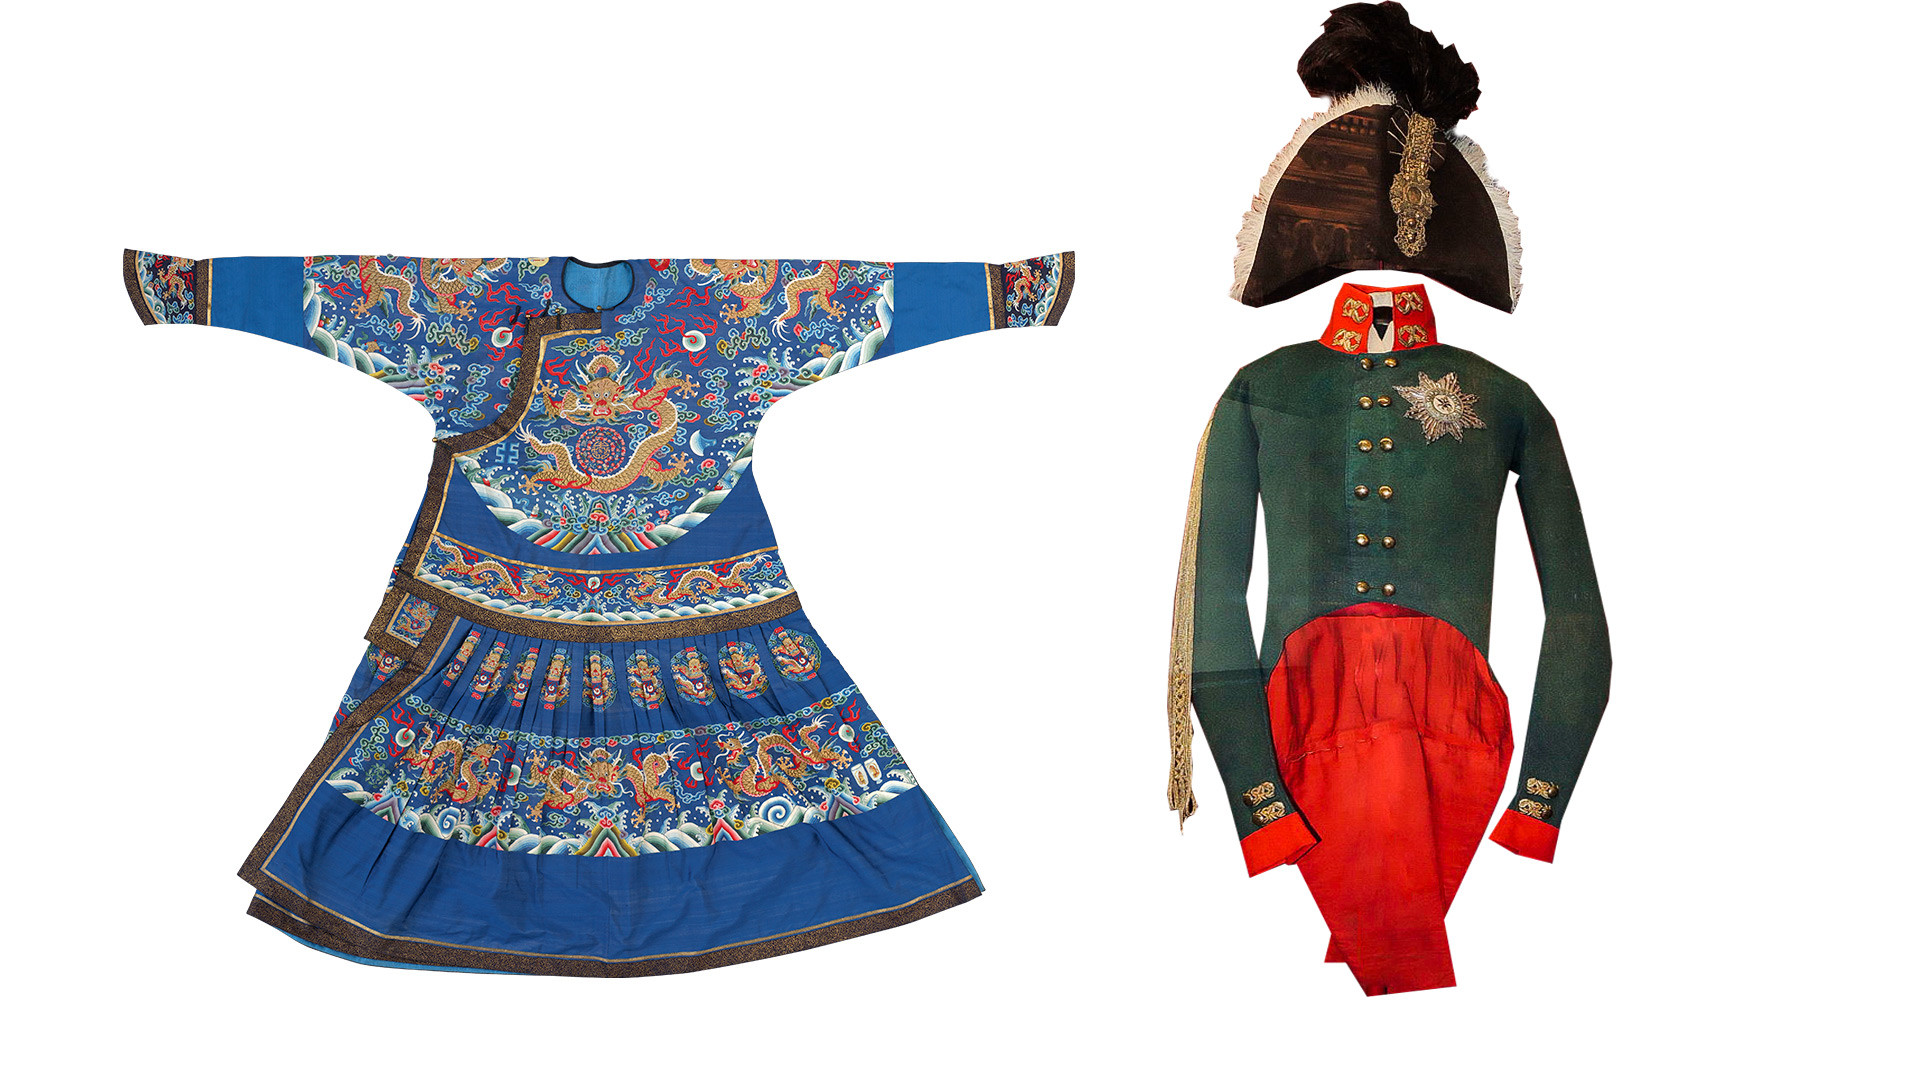 Lijevo: Svečana odjeća cara. Dinastija Qing, vladavina Jiaqinga (1796.–1821.) Desno: Krunidbena odjeća cara Aleksandra I. 

